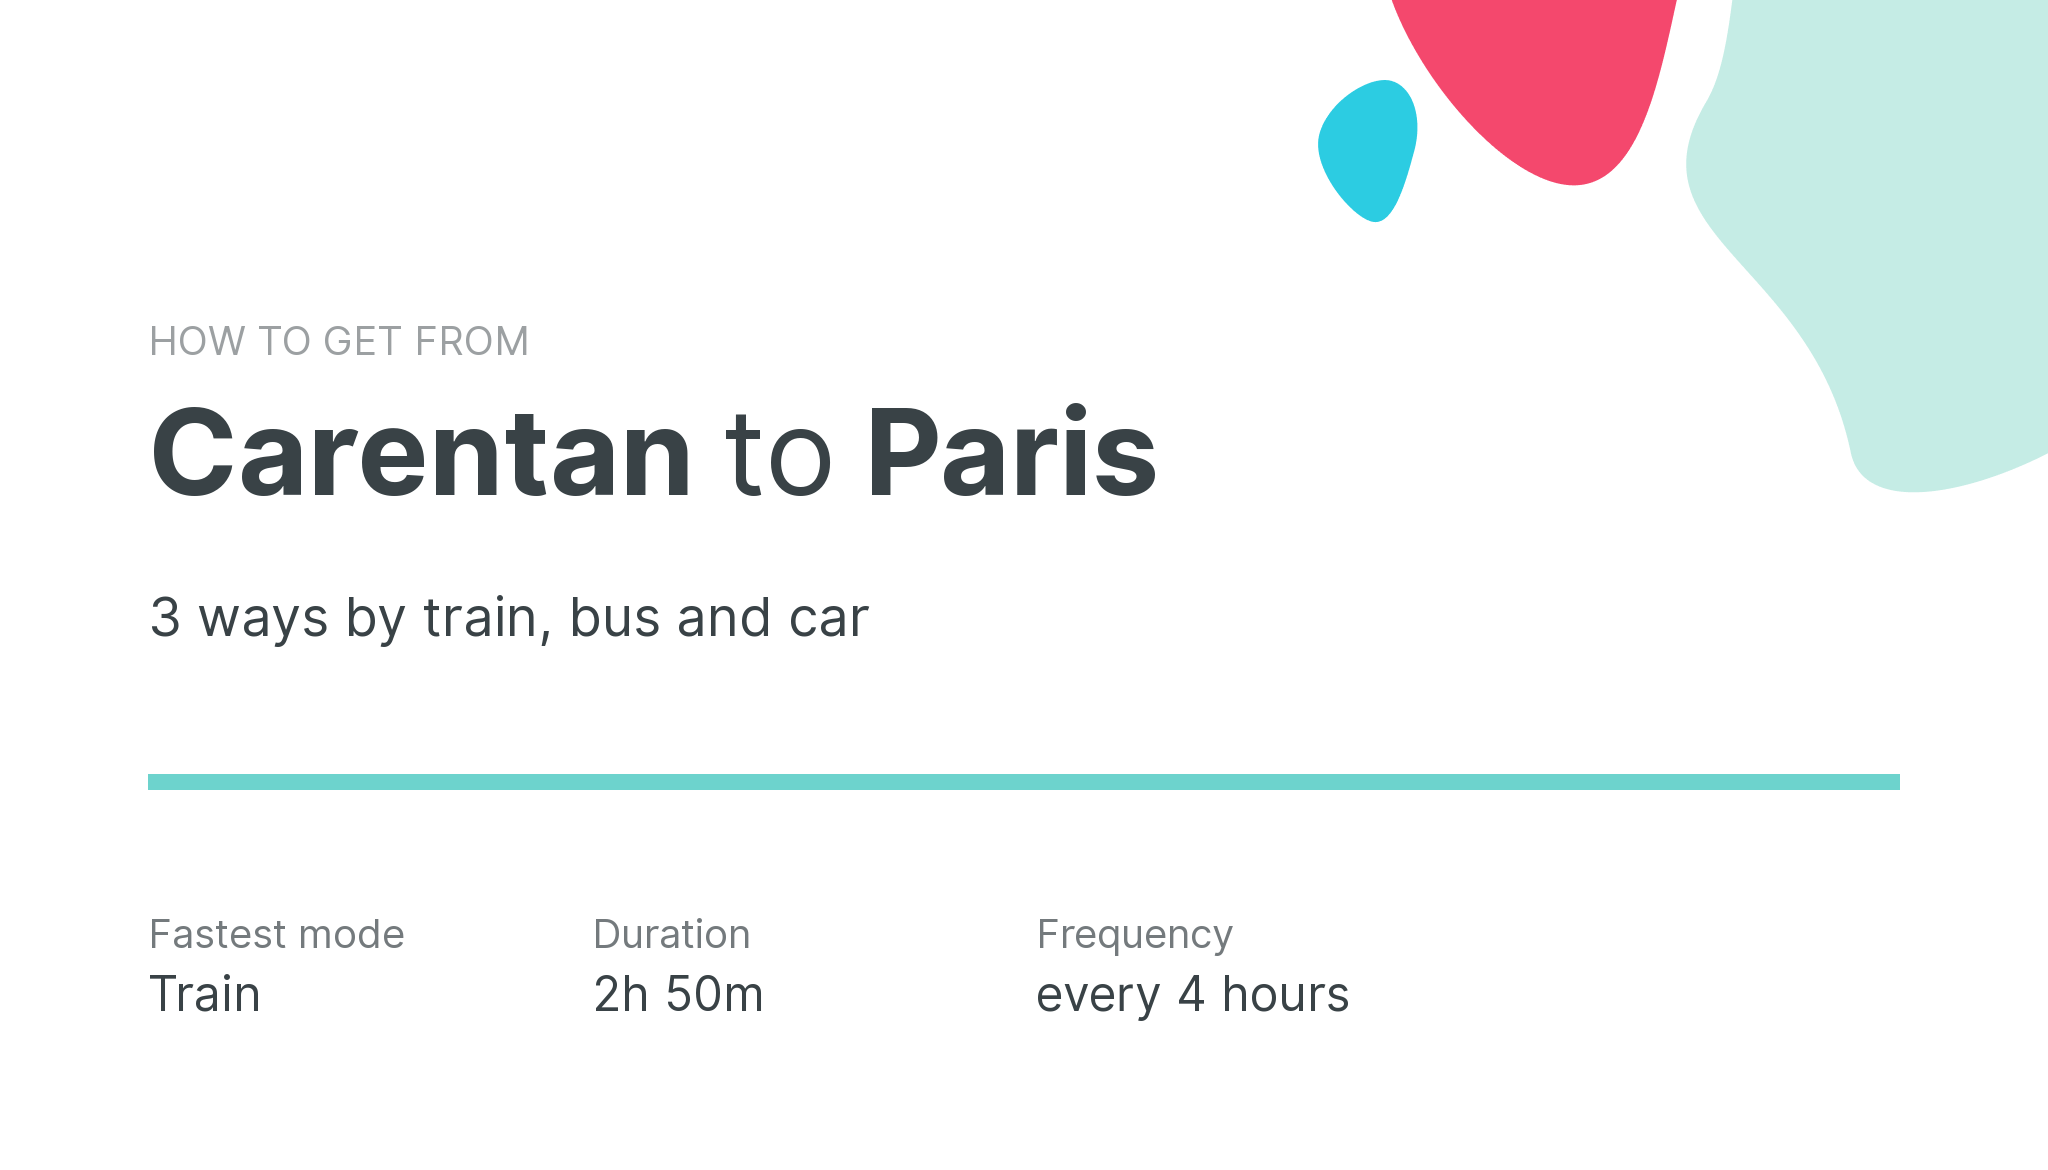 How do I get from Carentan to Paris